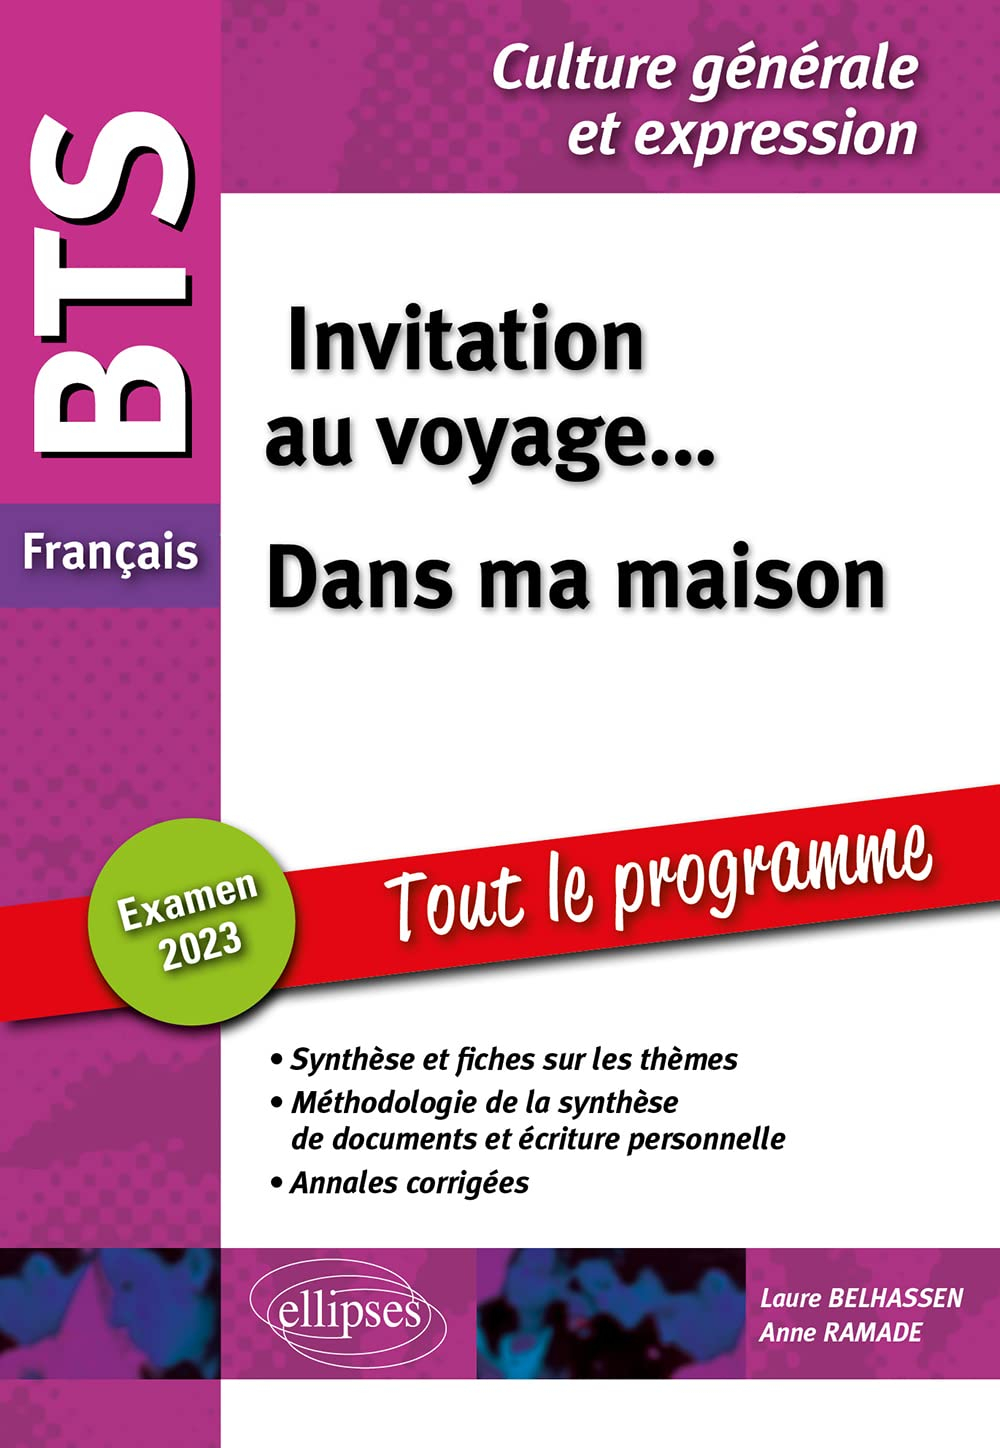 Invitation au voyage... dans ma maison : BTS français, culture générale et expression, tout le progr